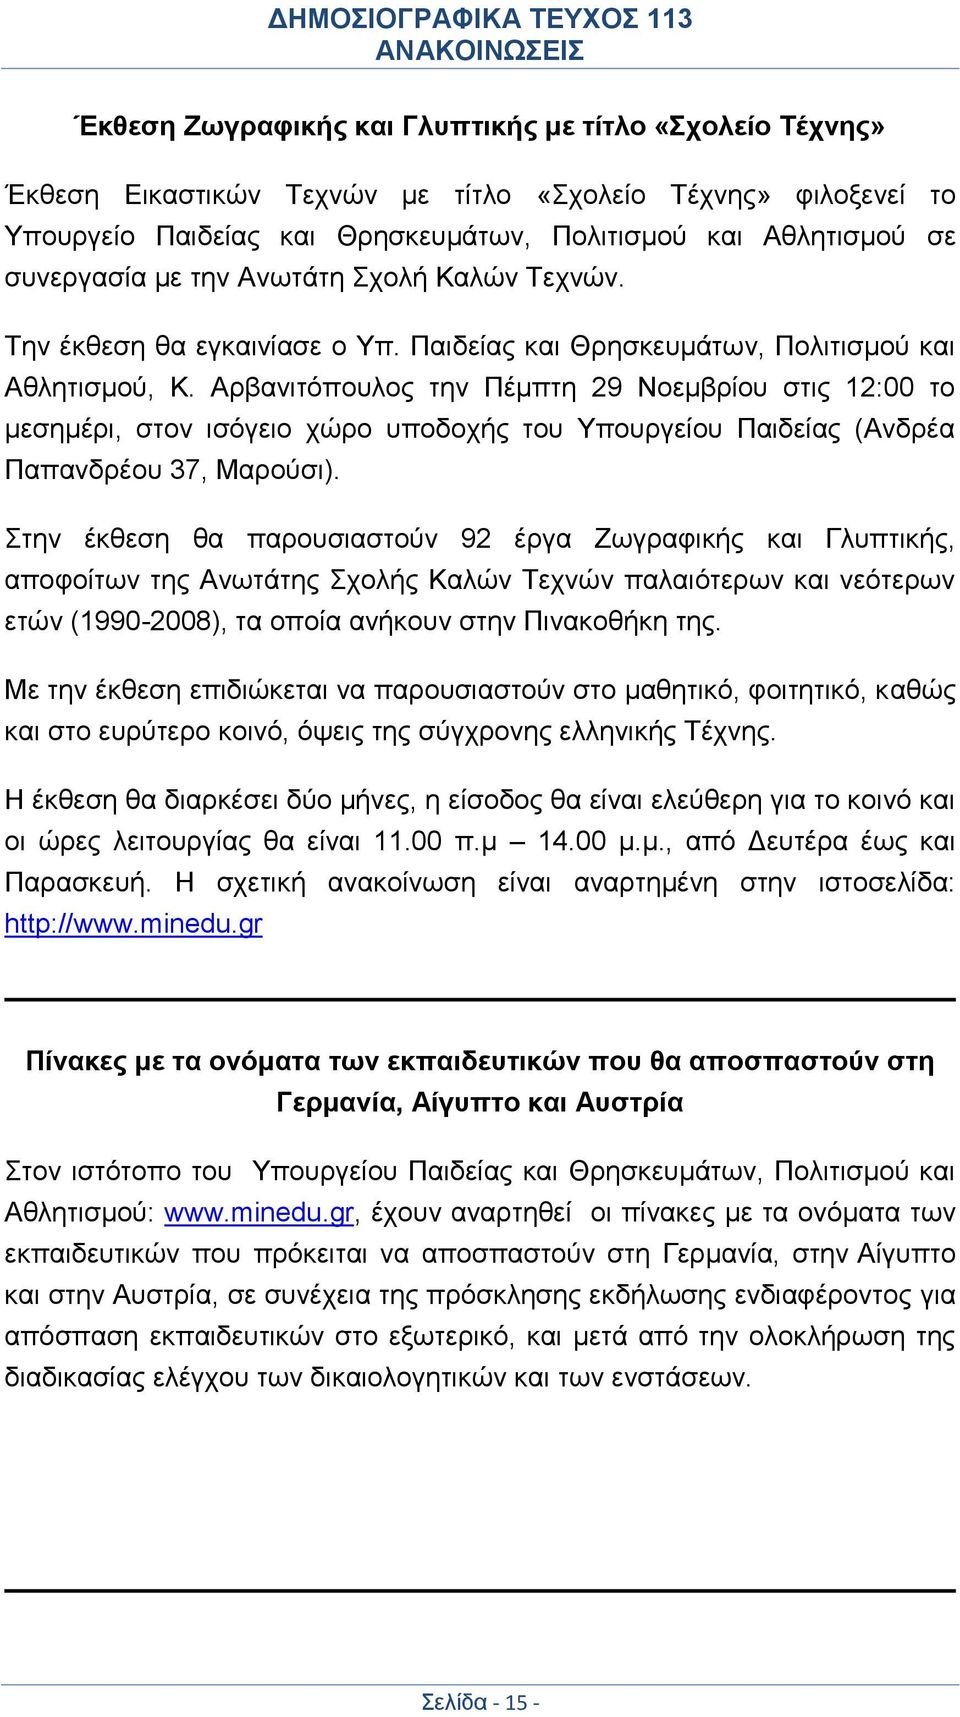 Αρβανιτόπουλος την Πέμπτη 29 Νοεμβρίου στις 12:00 το μεσημέρι, στον ισόγειο χώρο υποδοχής του Υπουργείου Παιδείας (Ανδρέα Παπανδρέου 37, Μαρούσι).